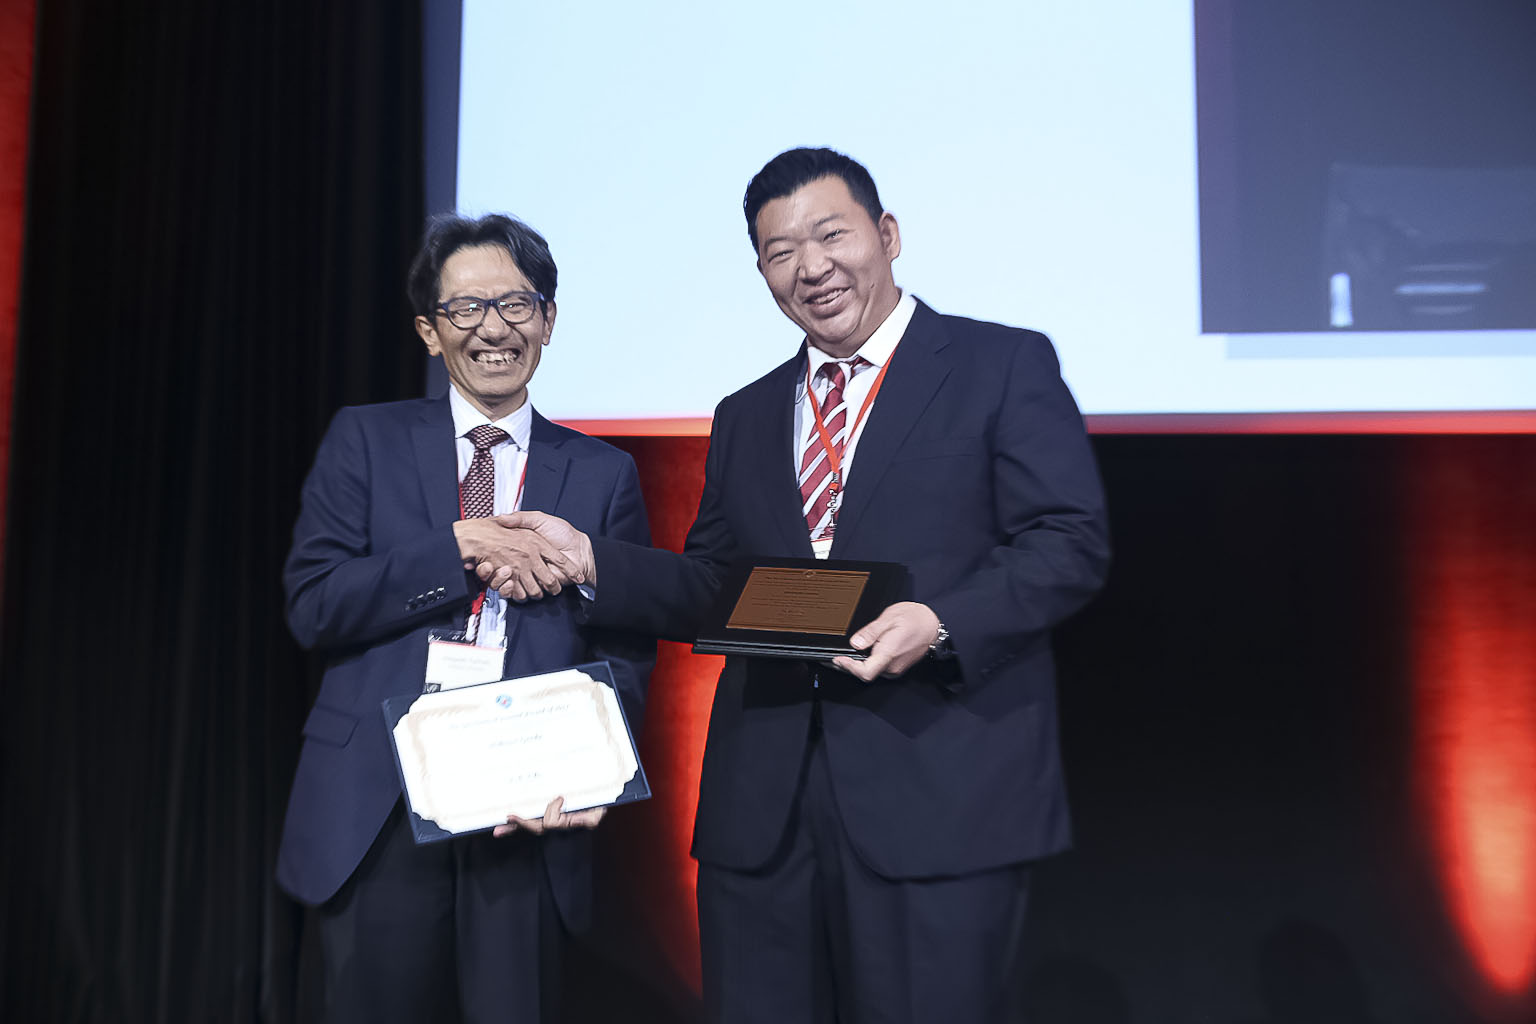 玄田英典特任准教授の論文がGJ賞を受賞しました